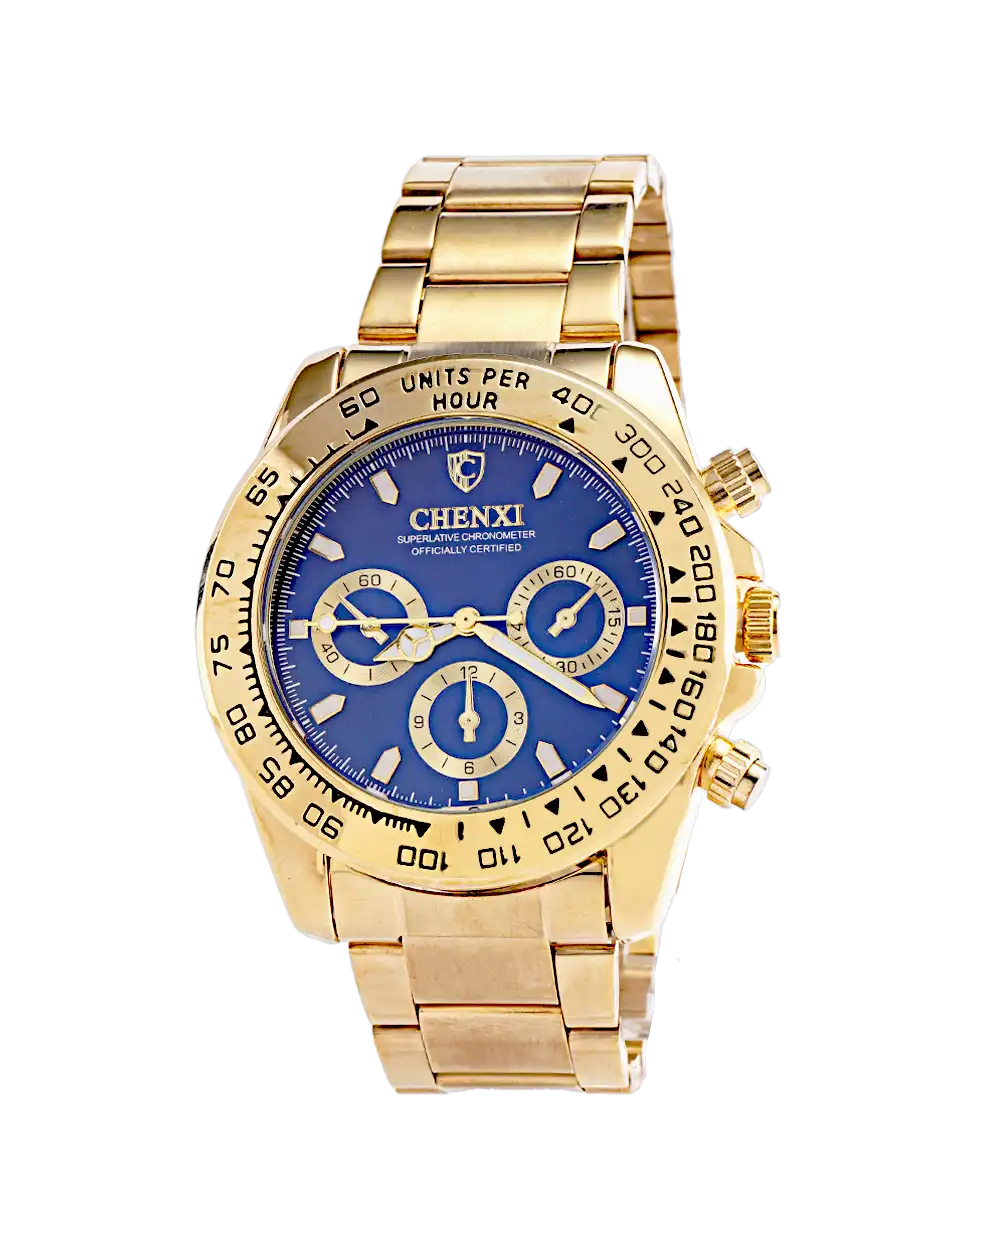 خرید ساعت مچی مردانه چانگ شی CHENXI مدل1665 صفحه آبی با بهترین قیمت به همراه جعبه ی ساعت کادویی و ارسال رایگان به سراسر ایران درب منزل